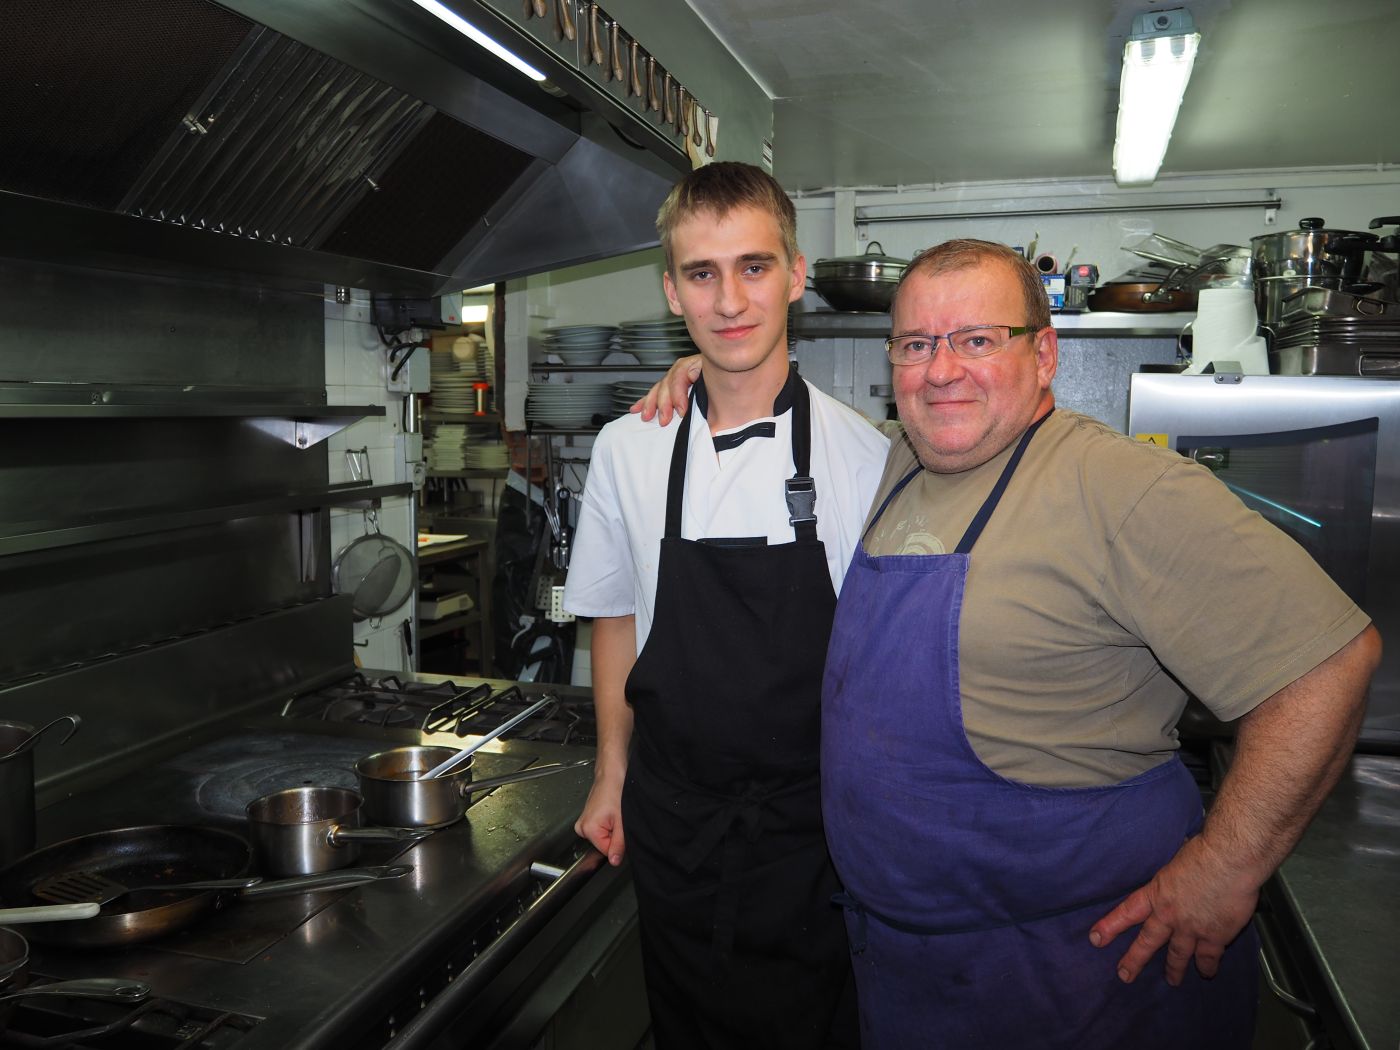 Deux étudiants russes en cuisine à Angoulême